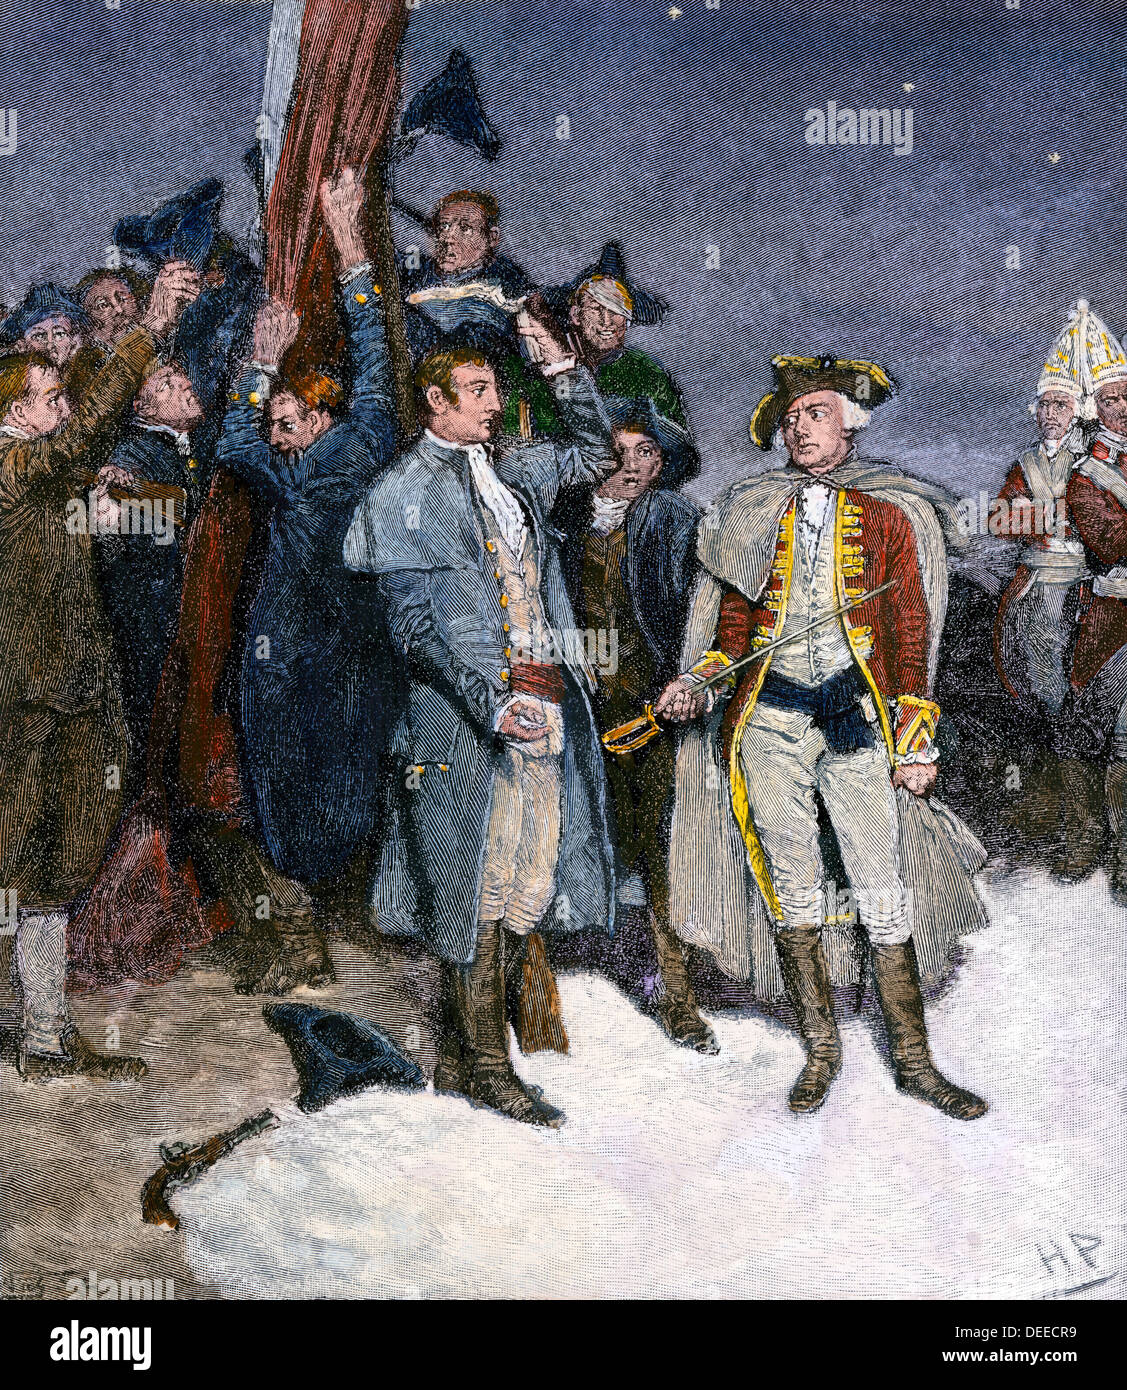 Reddition du fort William et Mary de colons, qui ont pris la poudre à Boston, 1774. À la main, gravure sur bois de Howard Pyle illustration Banque D'Images